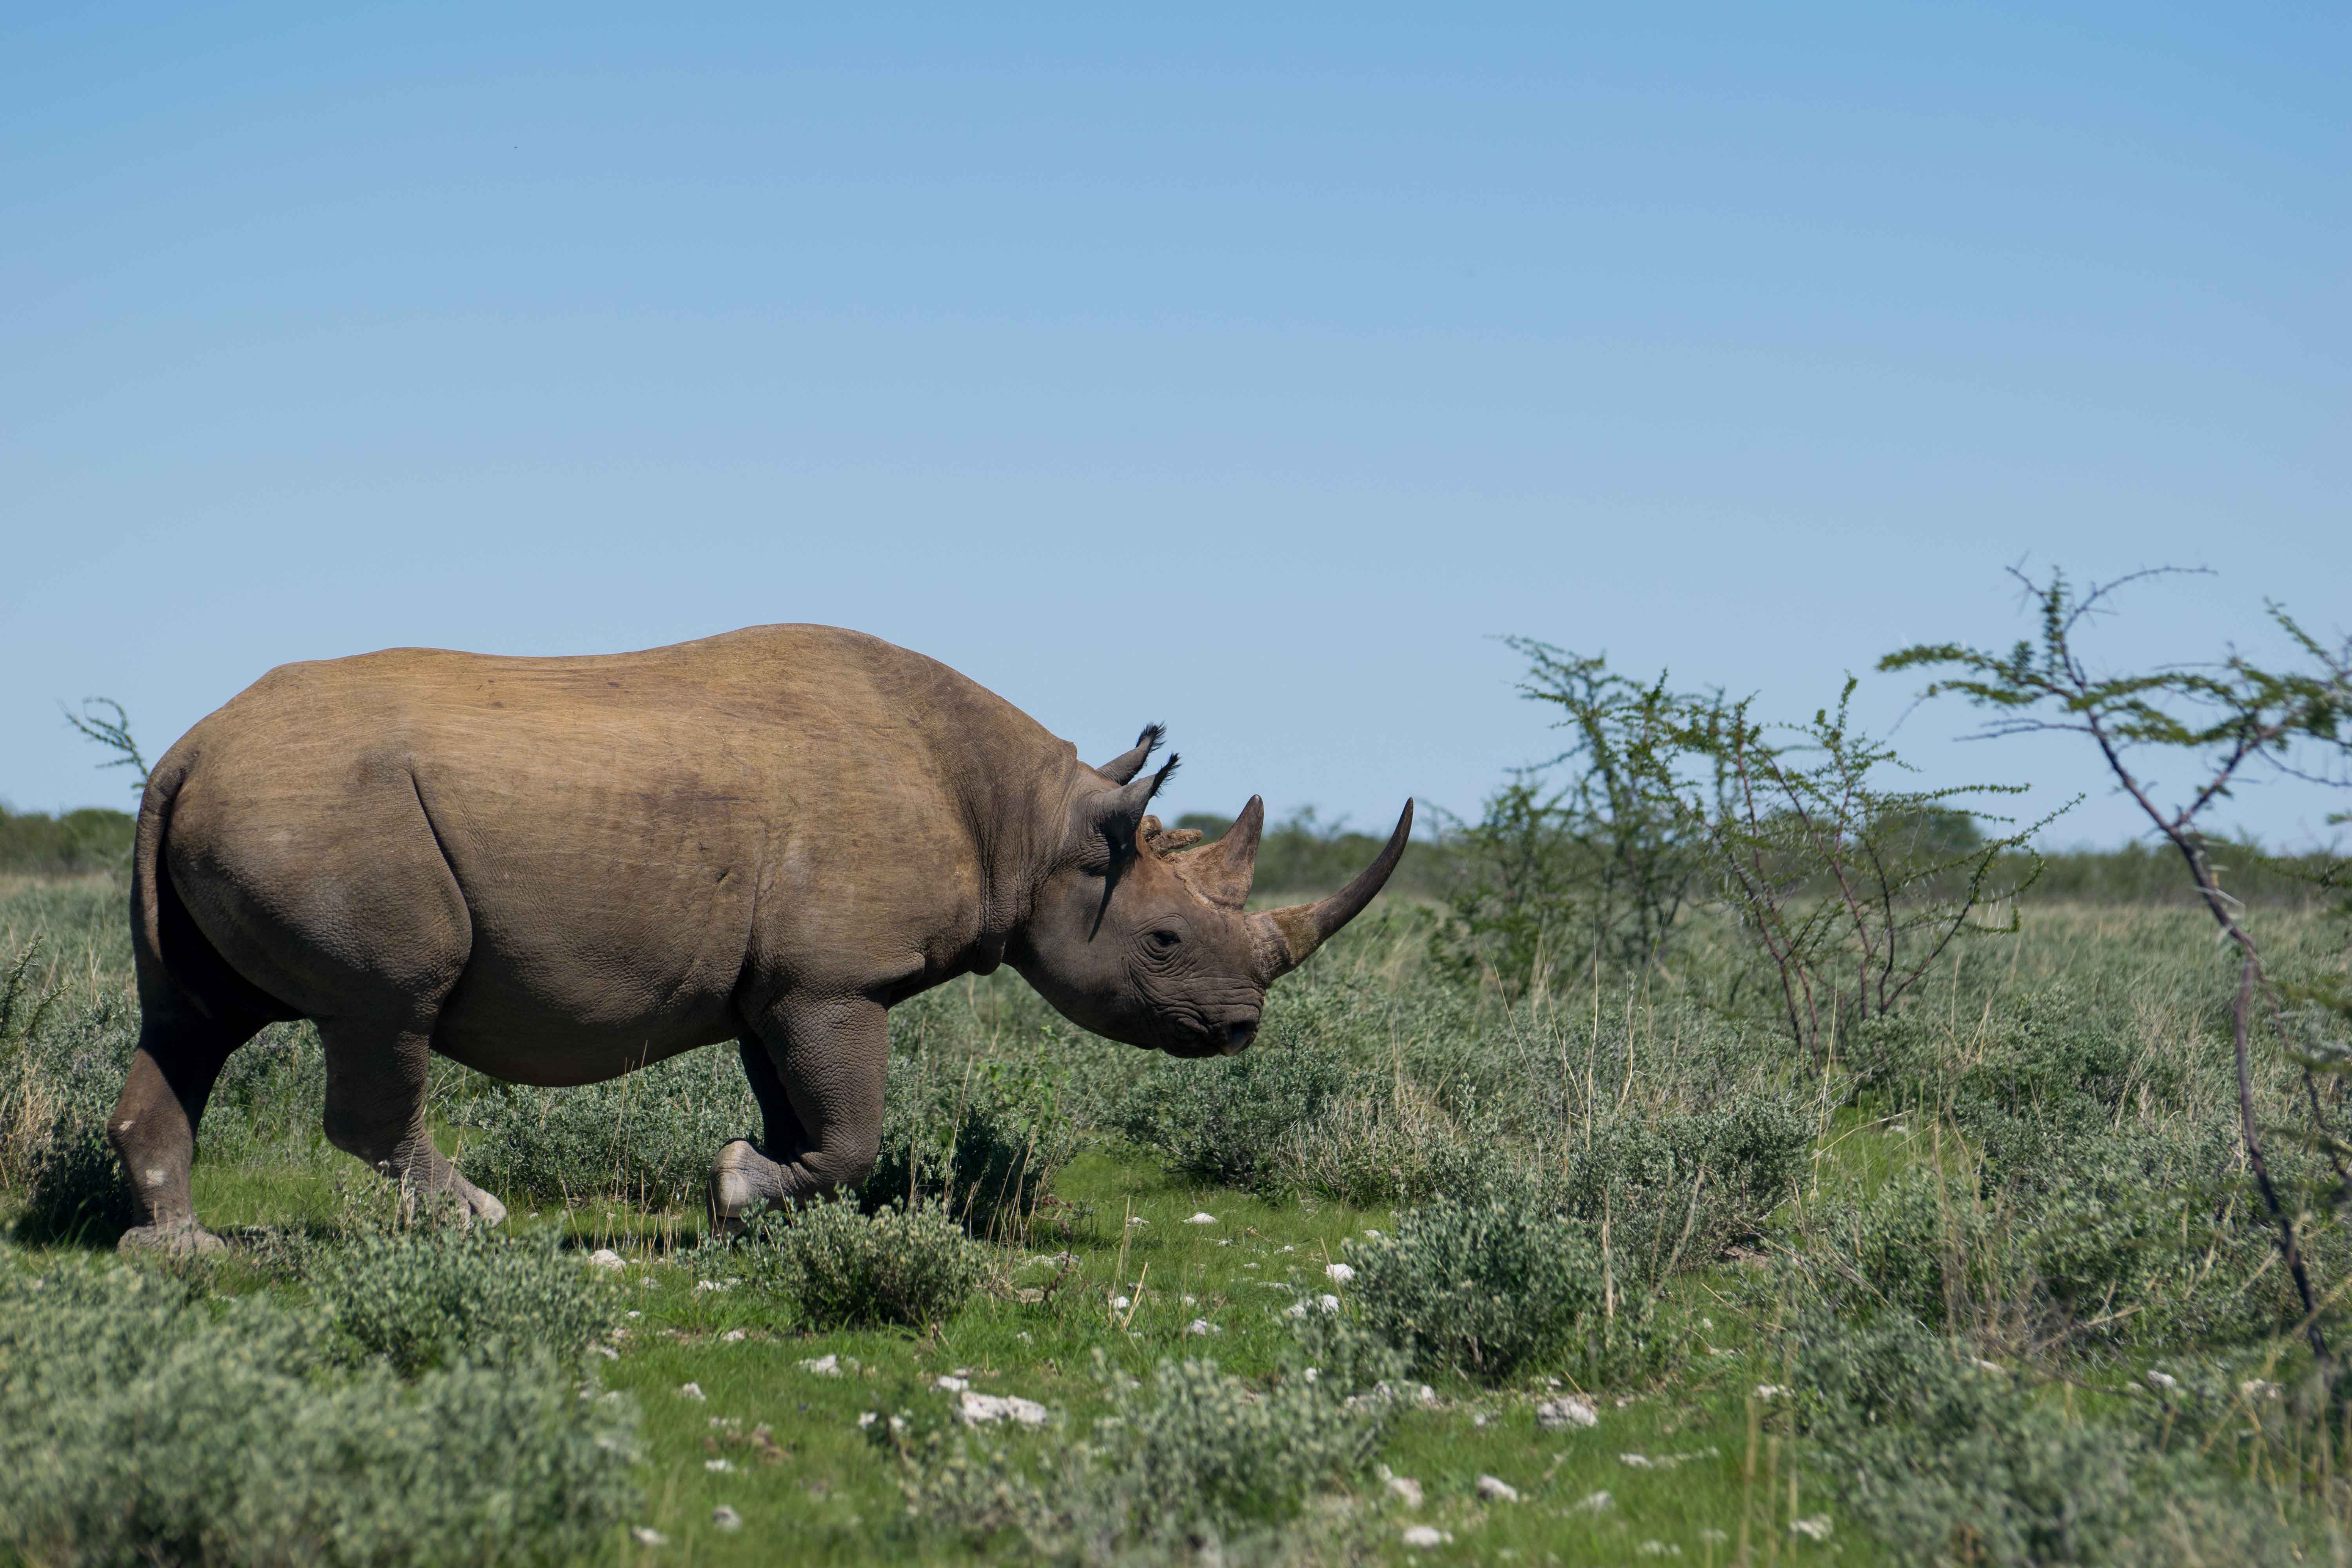 Que tal ver um animal como esse num safari em Cape Town?